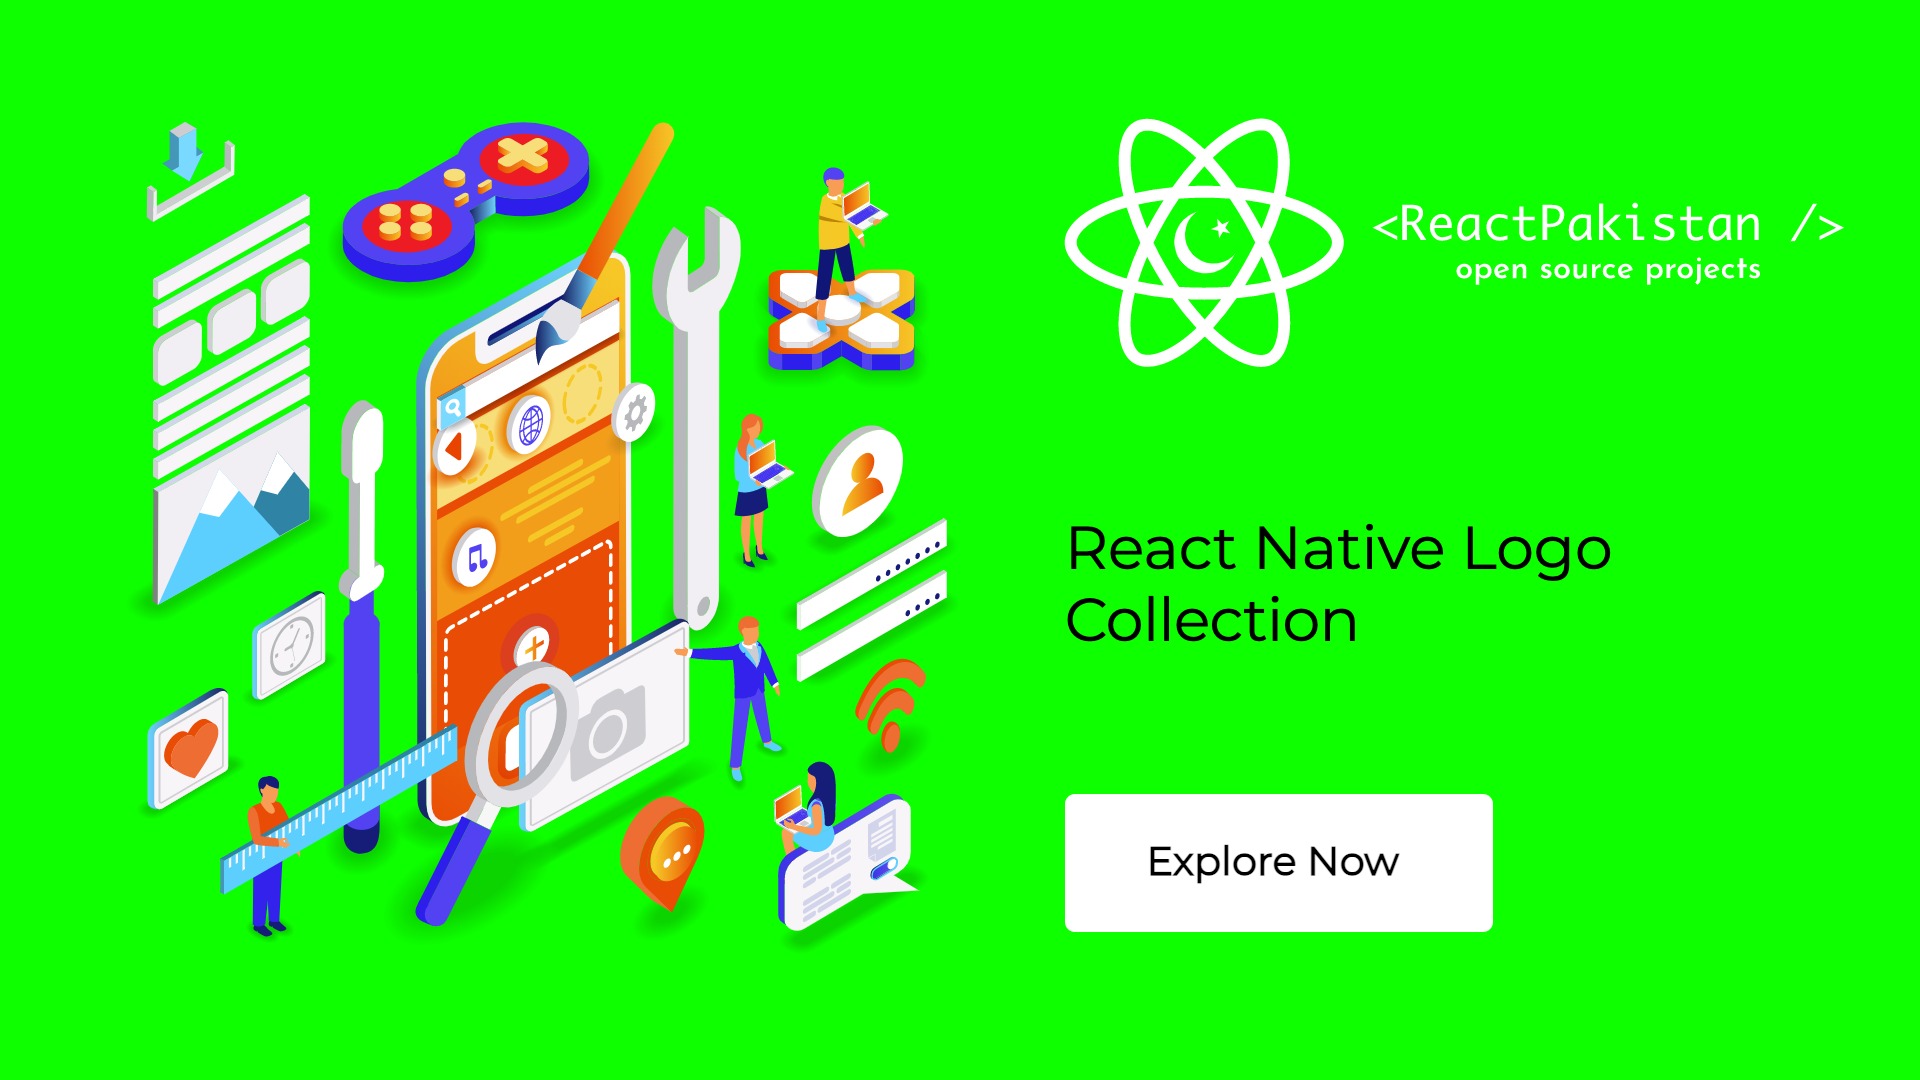 React Native Logo Collection - React Pakistan